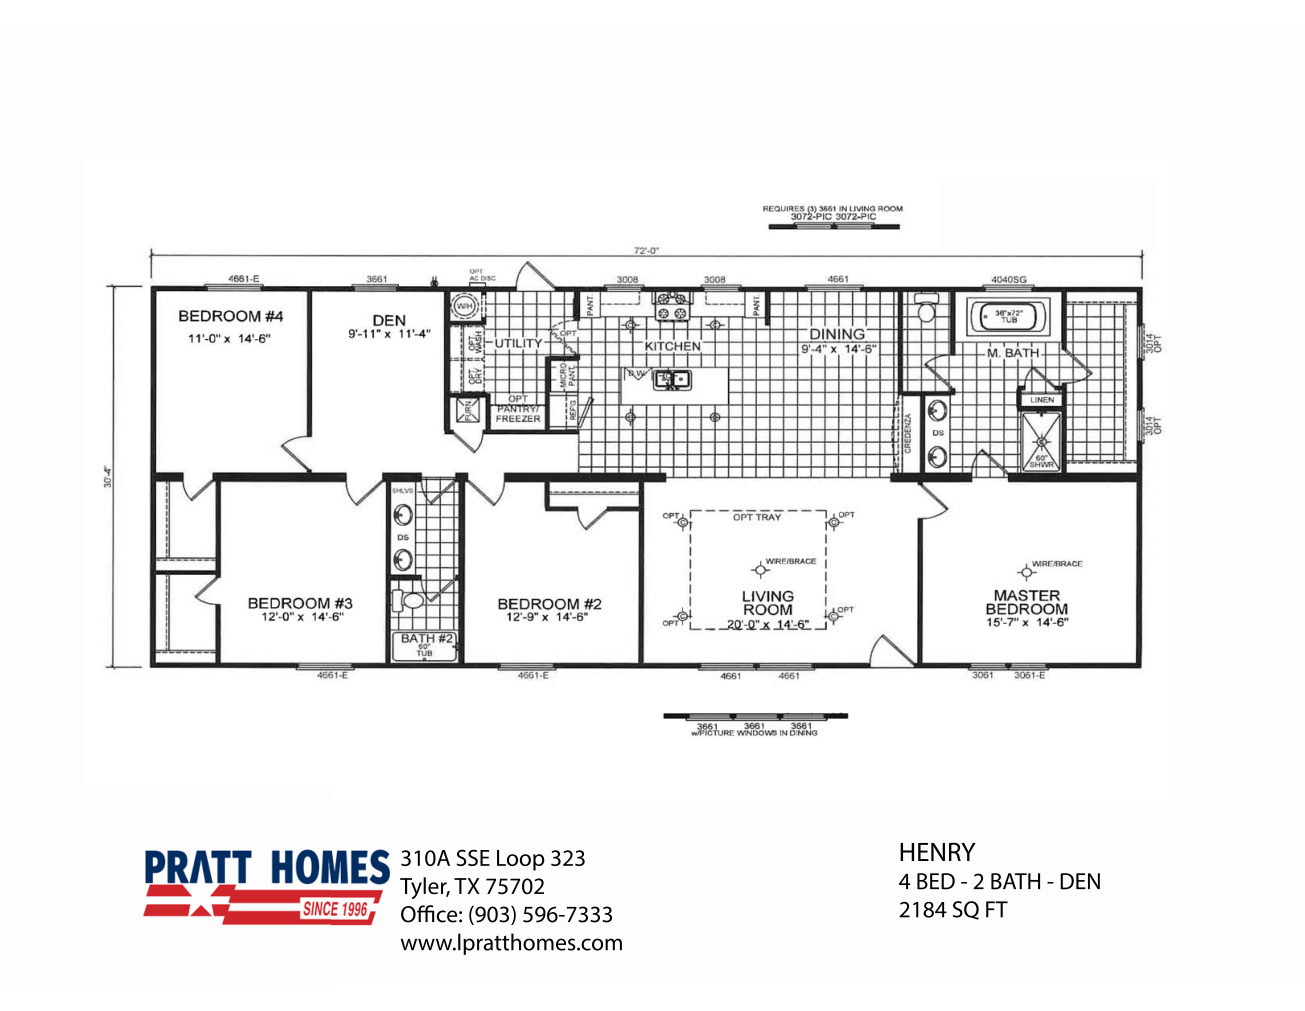 Floor Plan for house model Henry Pratt Homes, Tyler, Texas